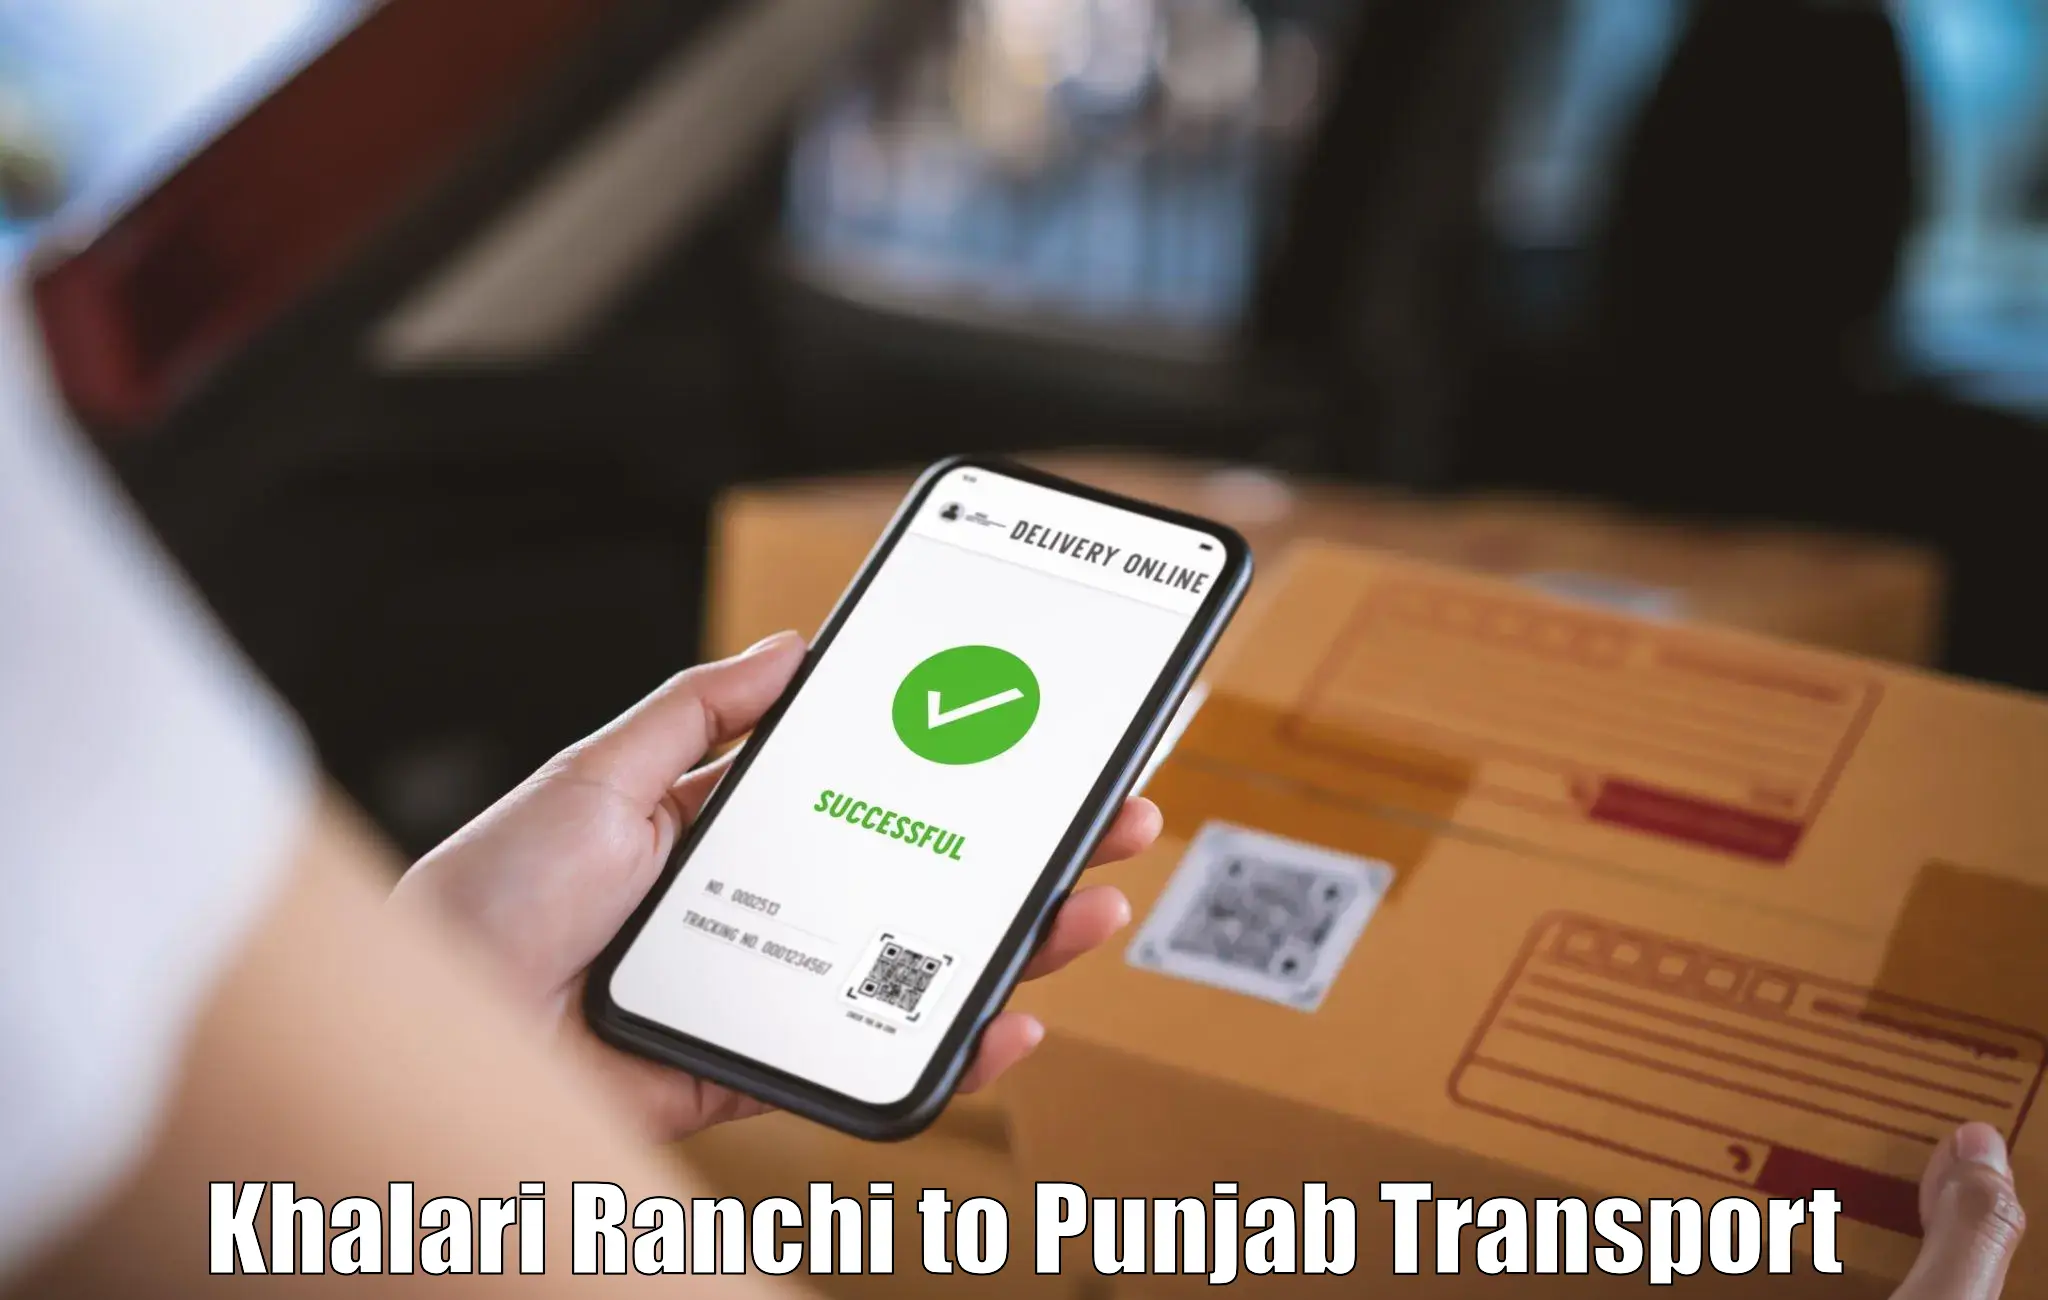 Nearby transport service Khalari Ranchi to Moga